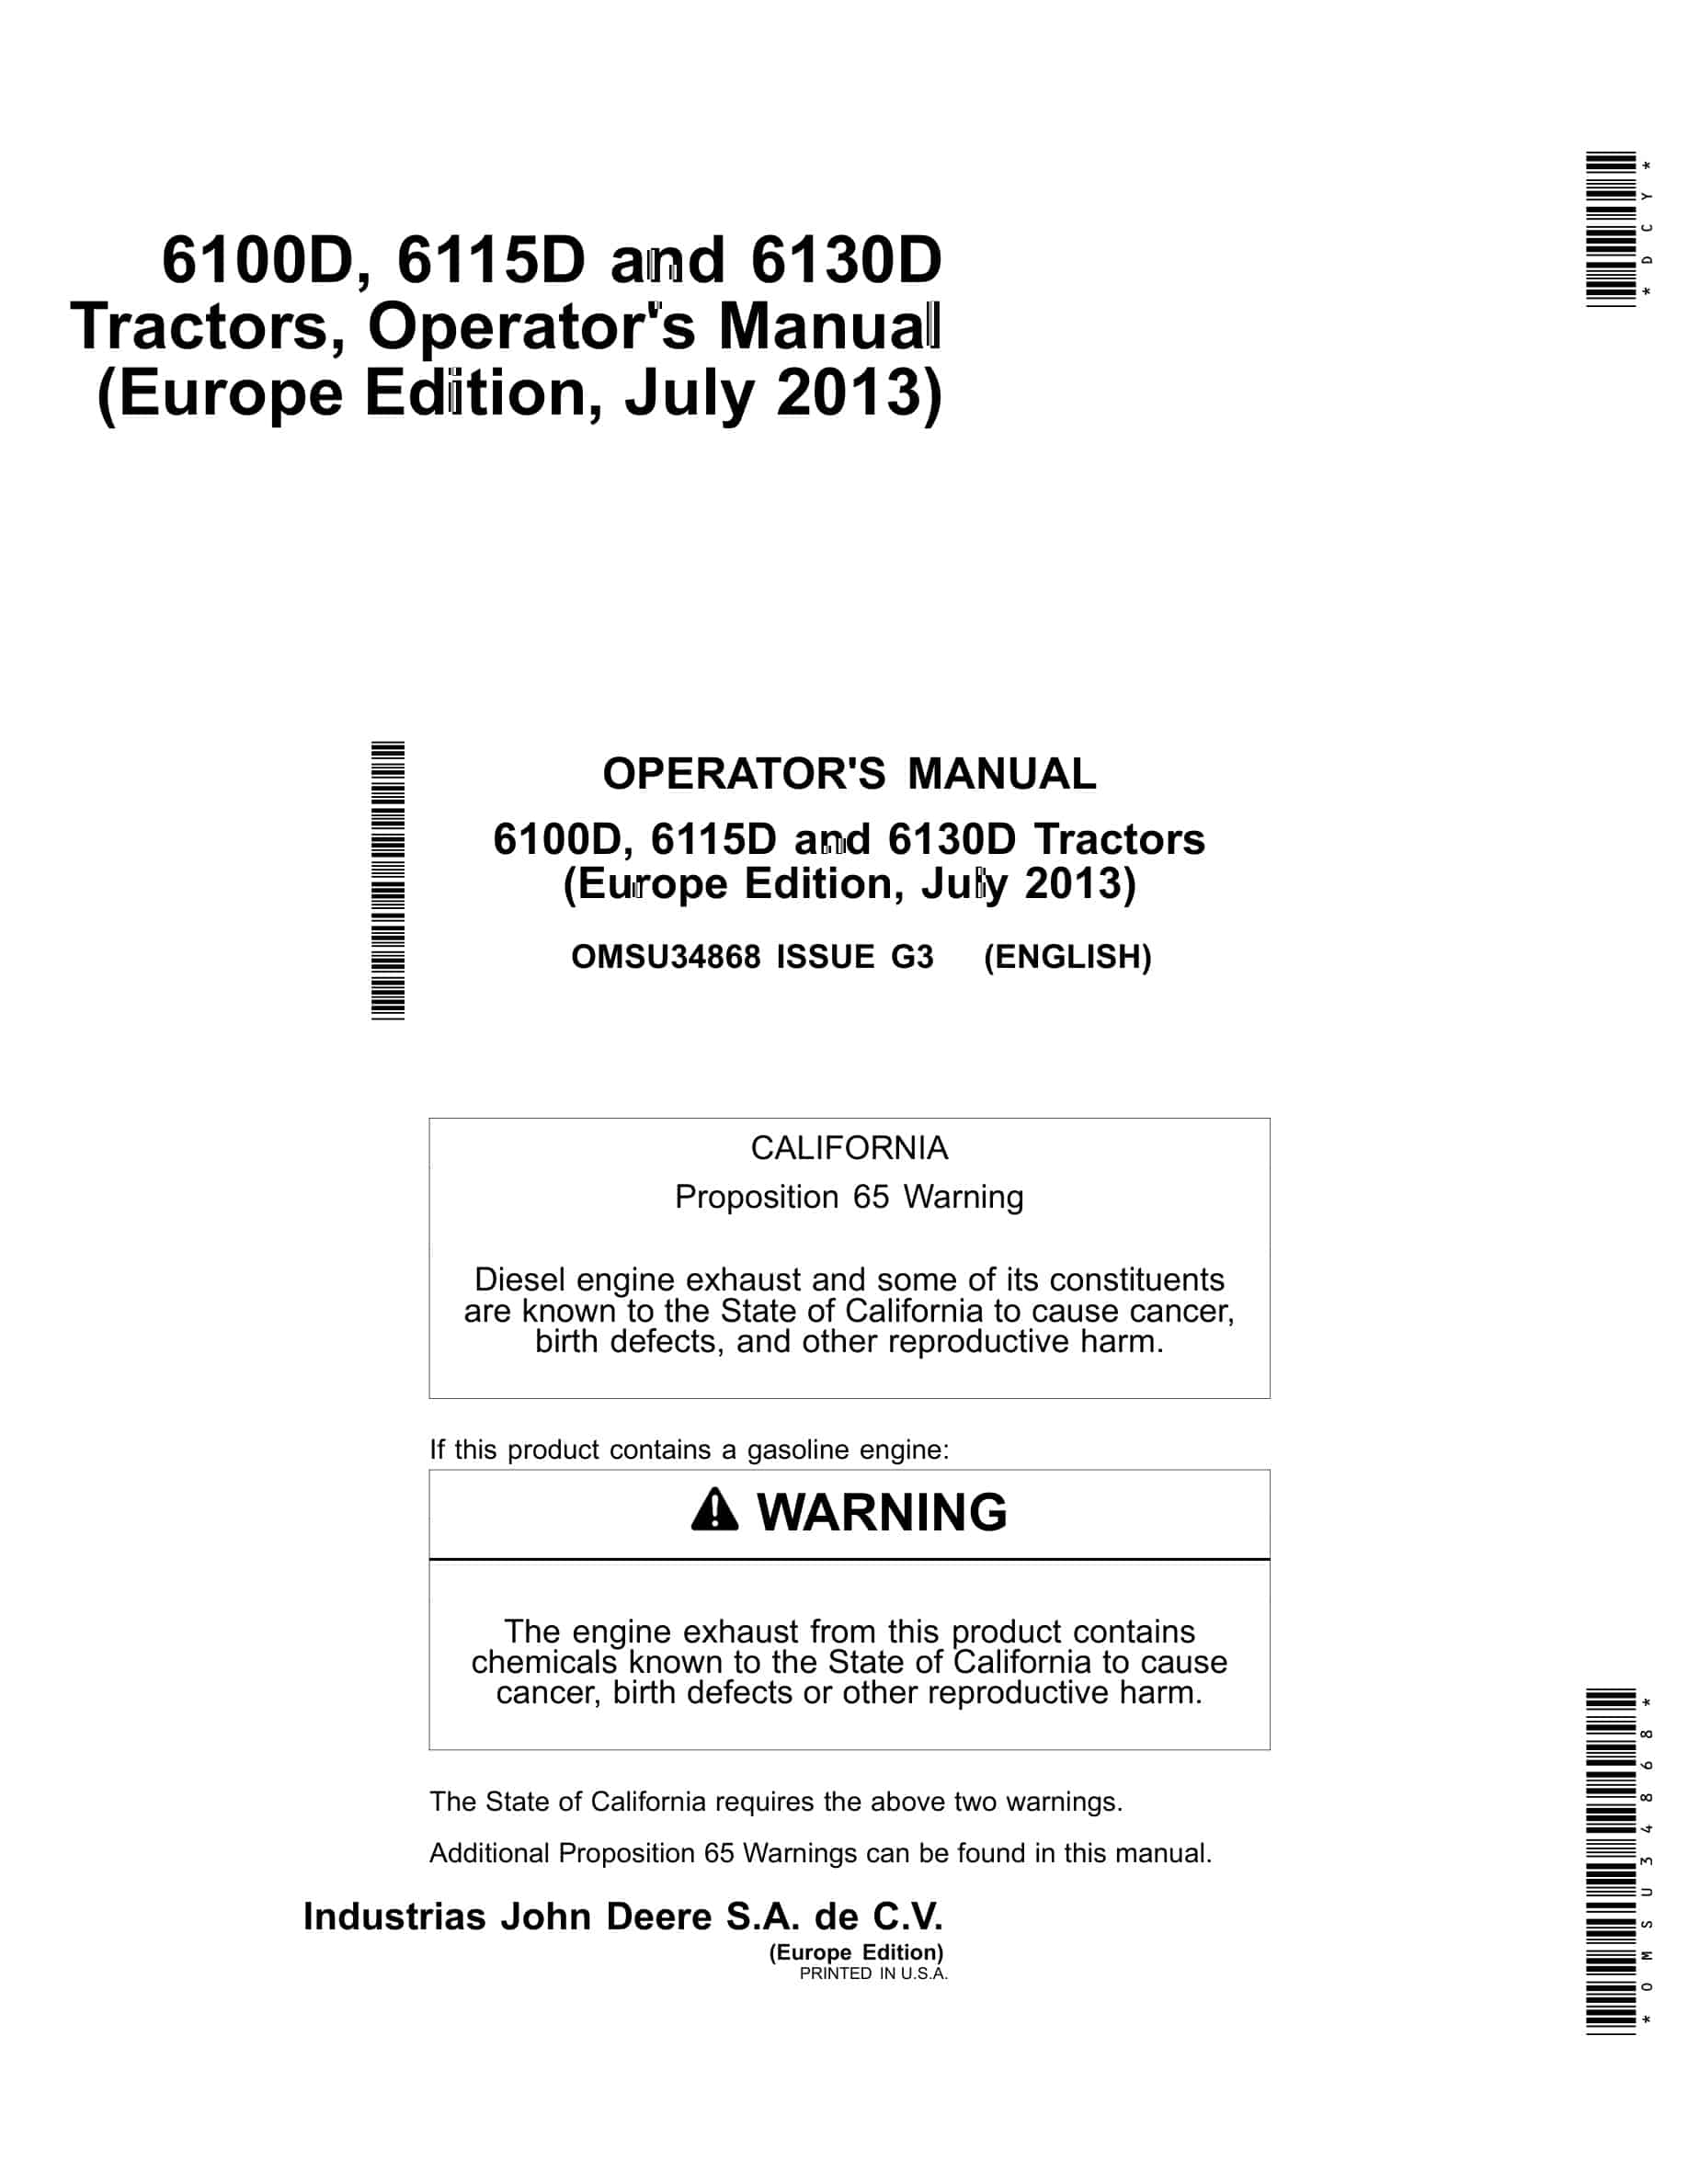 John Deere 6100d, 6115d And 6130d Tractors Operator Manuals OMSU34868-1